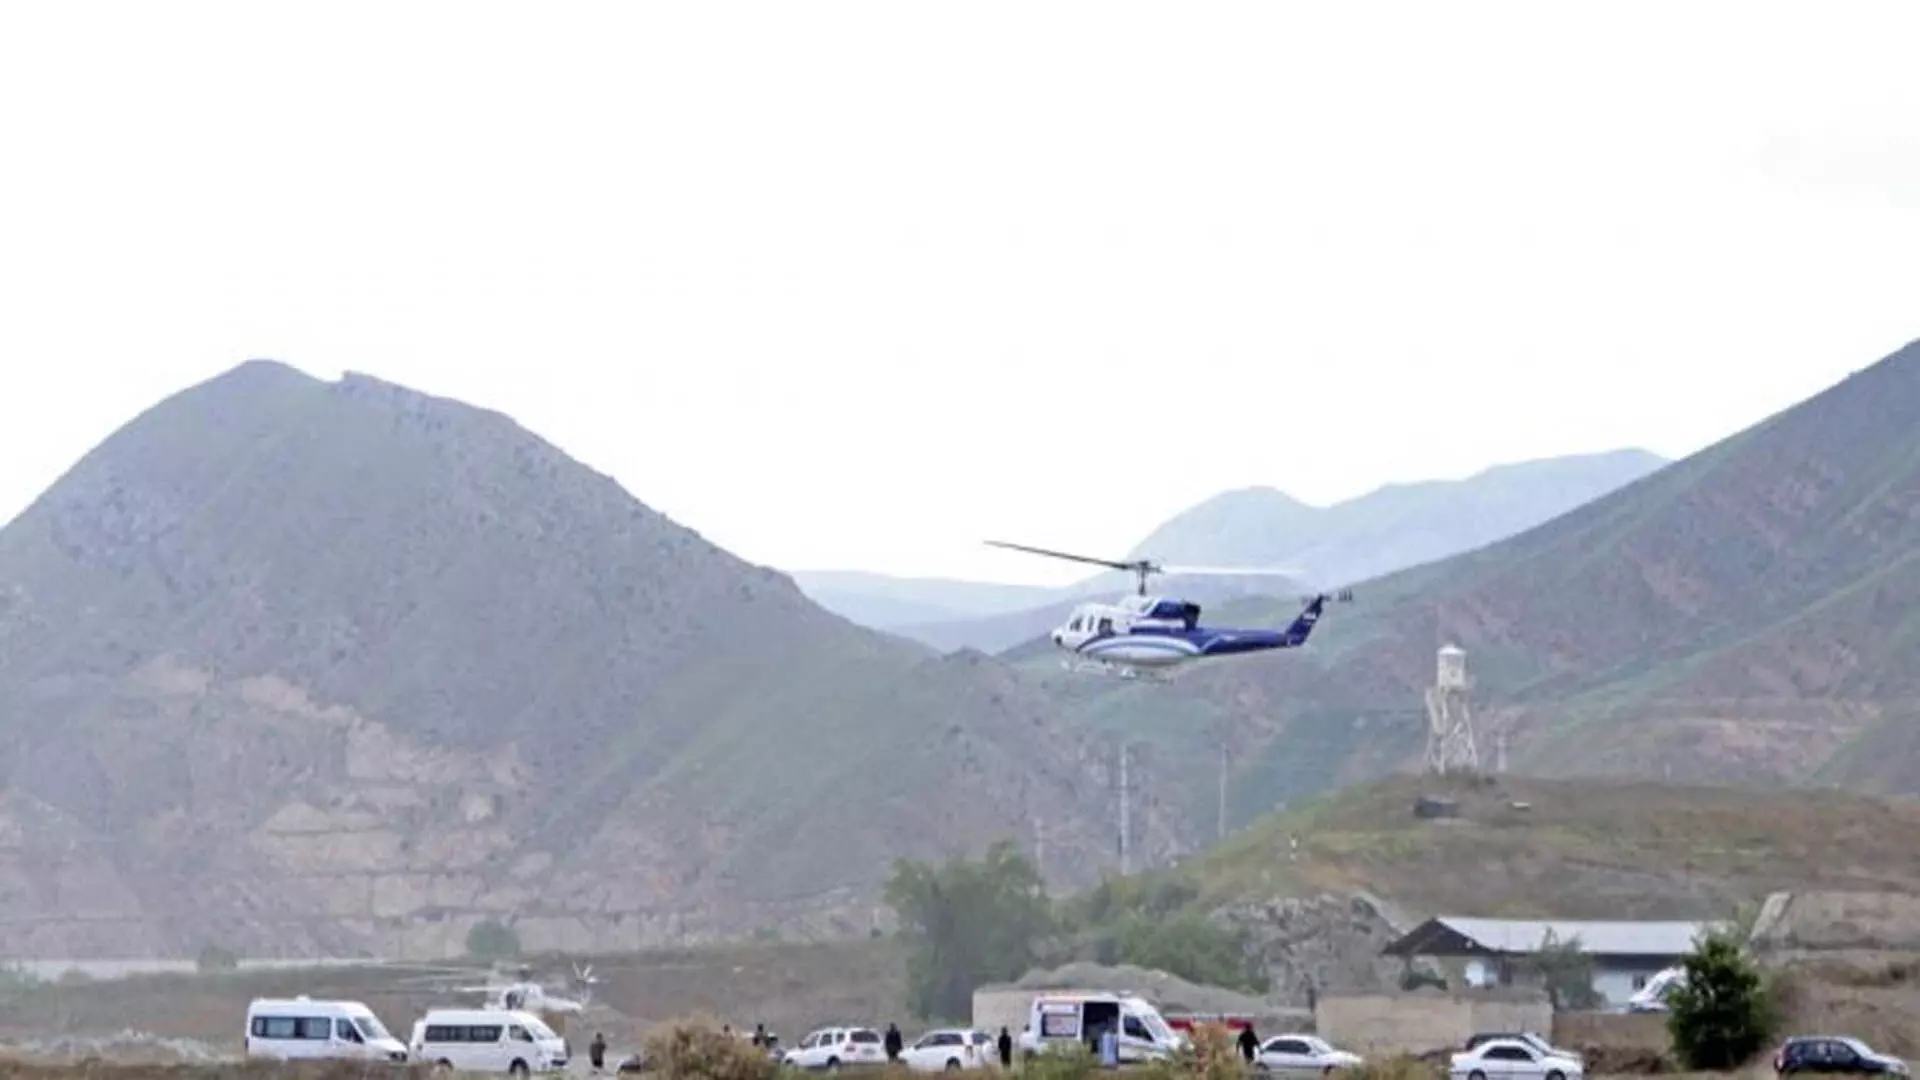 ईरान के राष्ट्रपति, विदेश मंत्री अन्य लोग हेलीकॉप्टर दुर्घटनास्थल पर मृत पाए गए